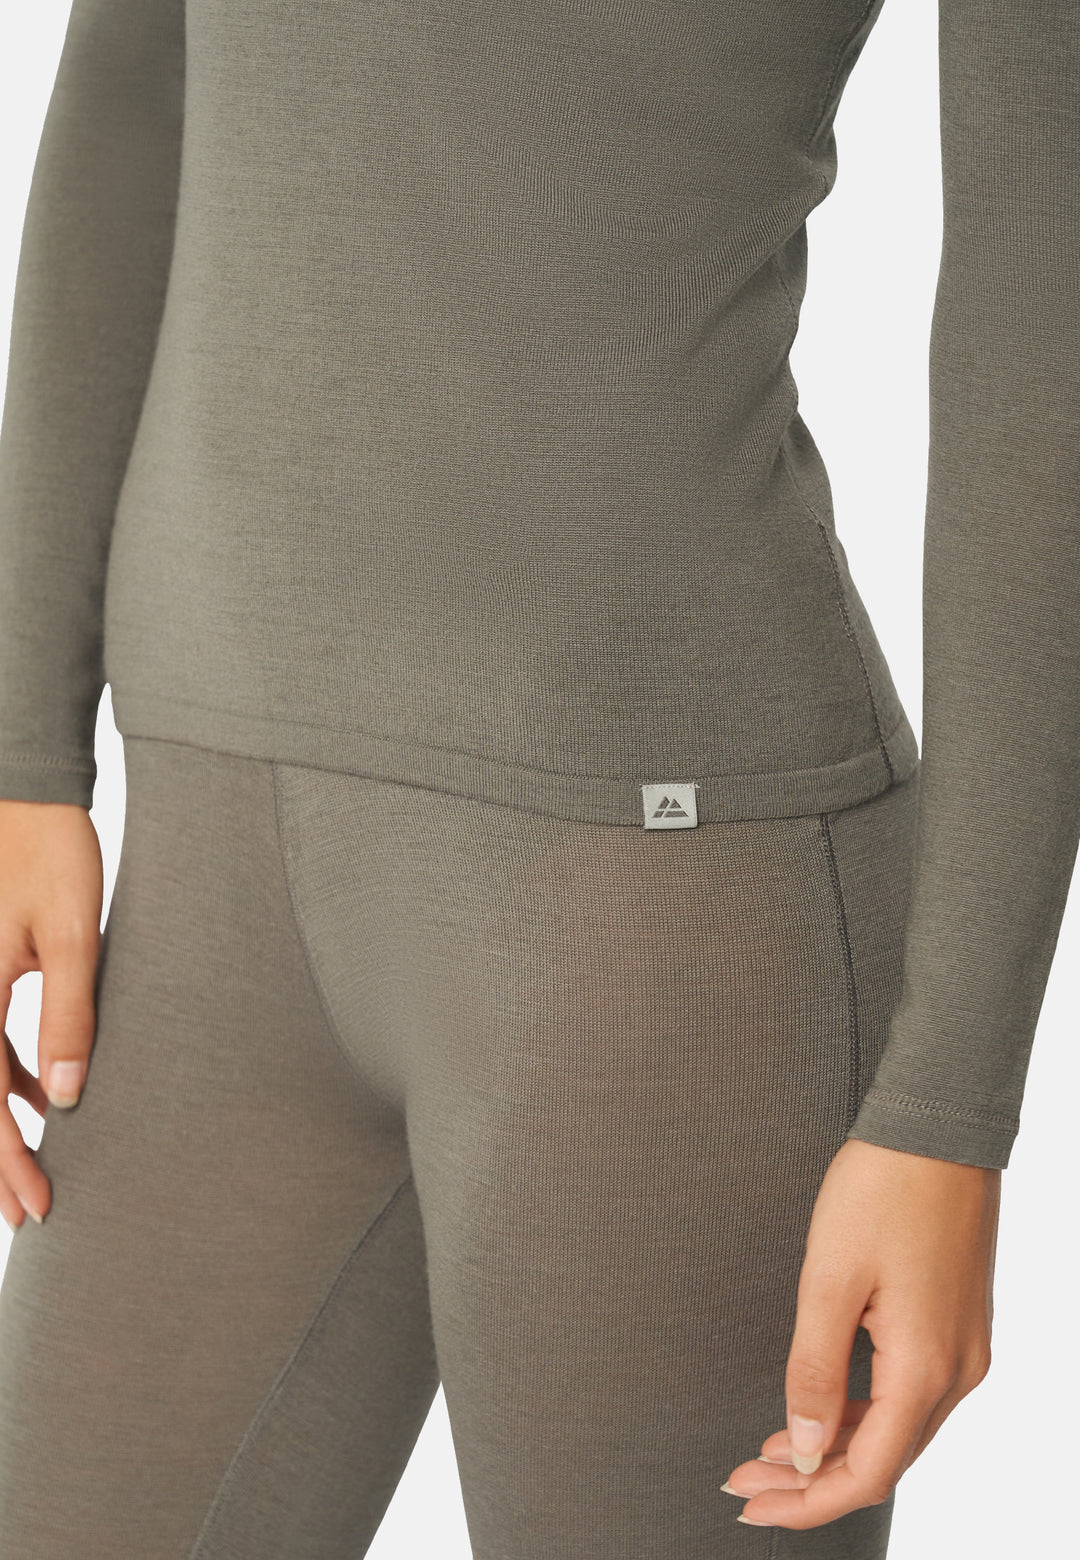 Women's Long Underpants in Merino Wool and Silk